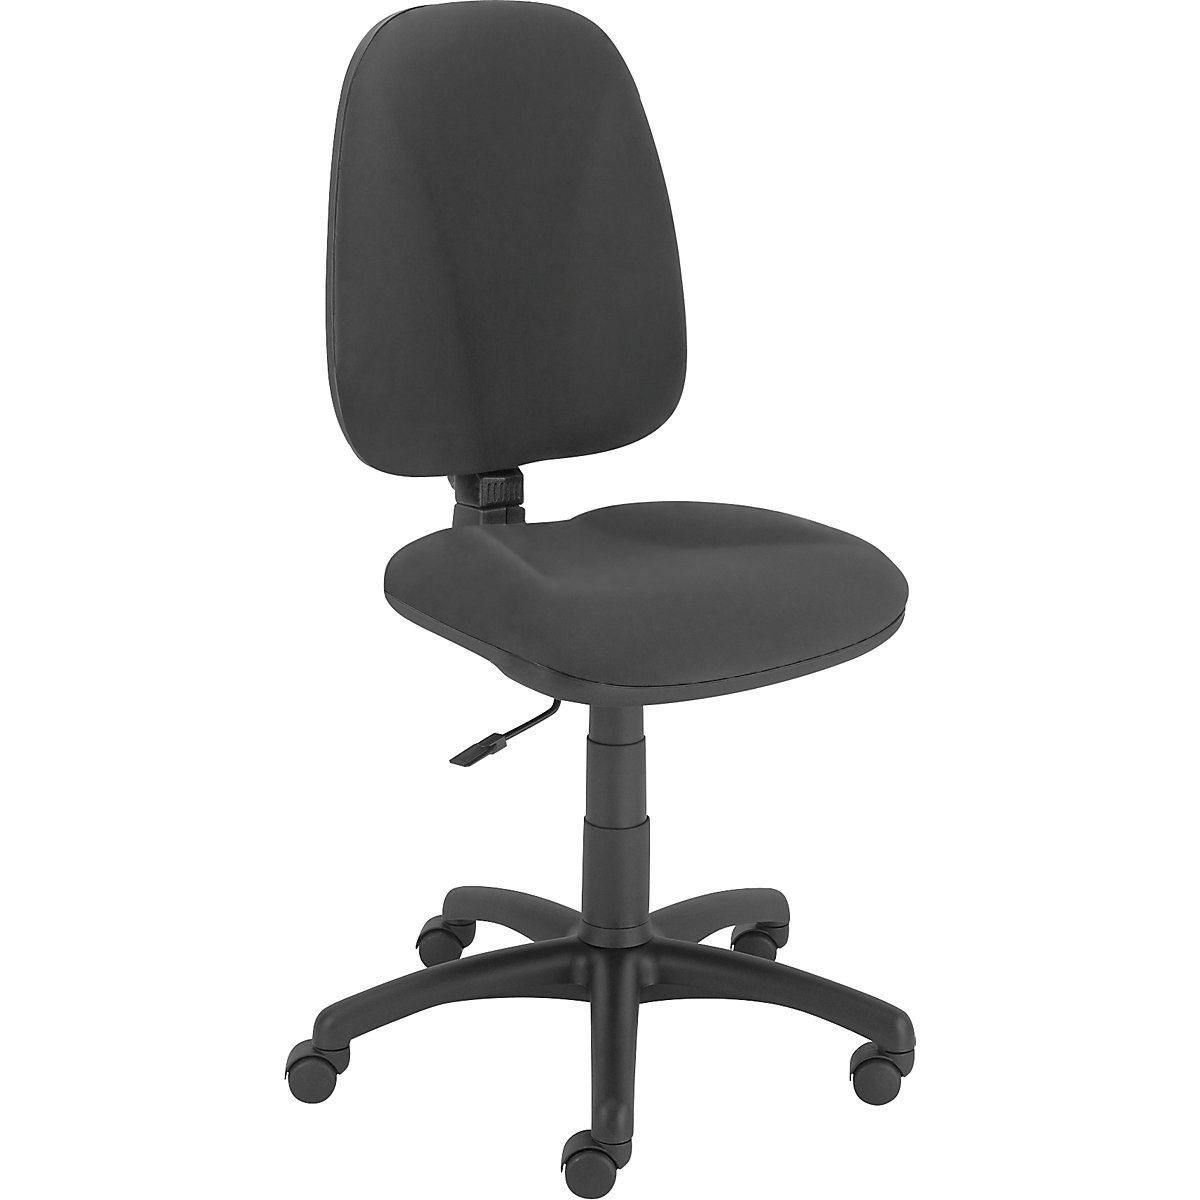 Obrotowe krzesło biurowe JUPITER – eurokraft basic, mechanizm synchroniczny, kolor obicia: antracyt-3